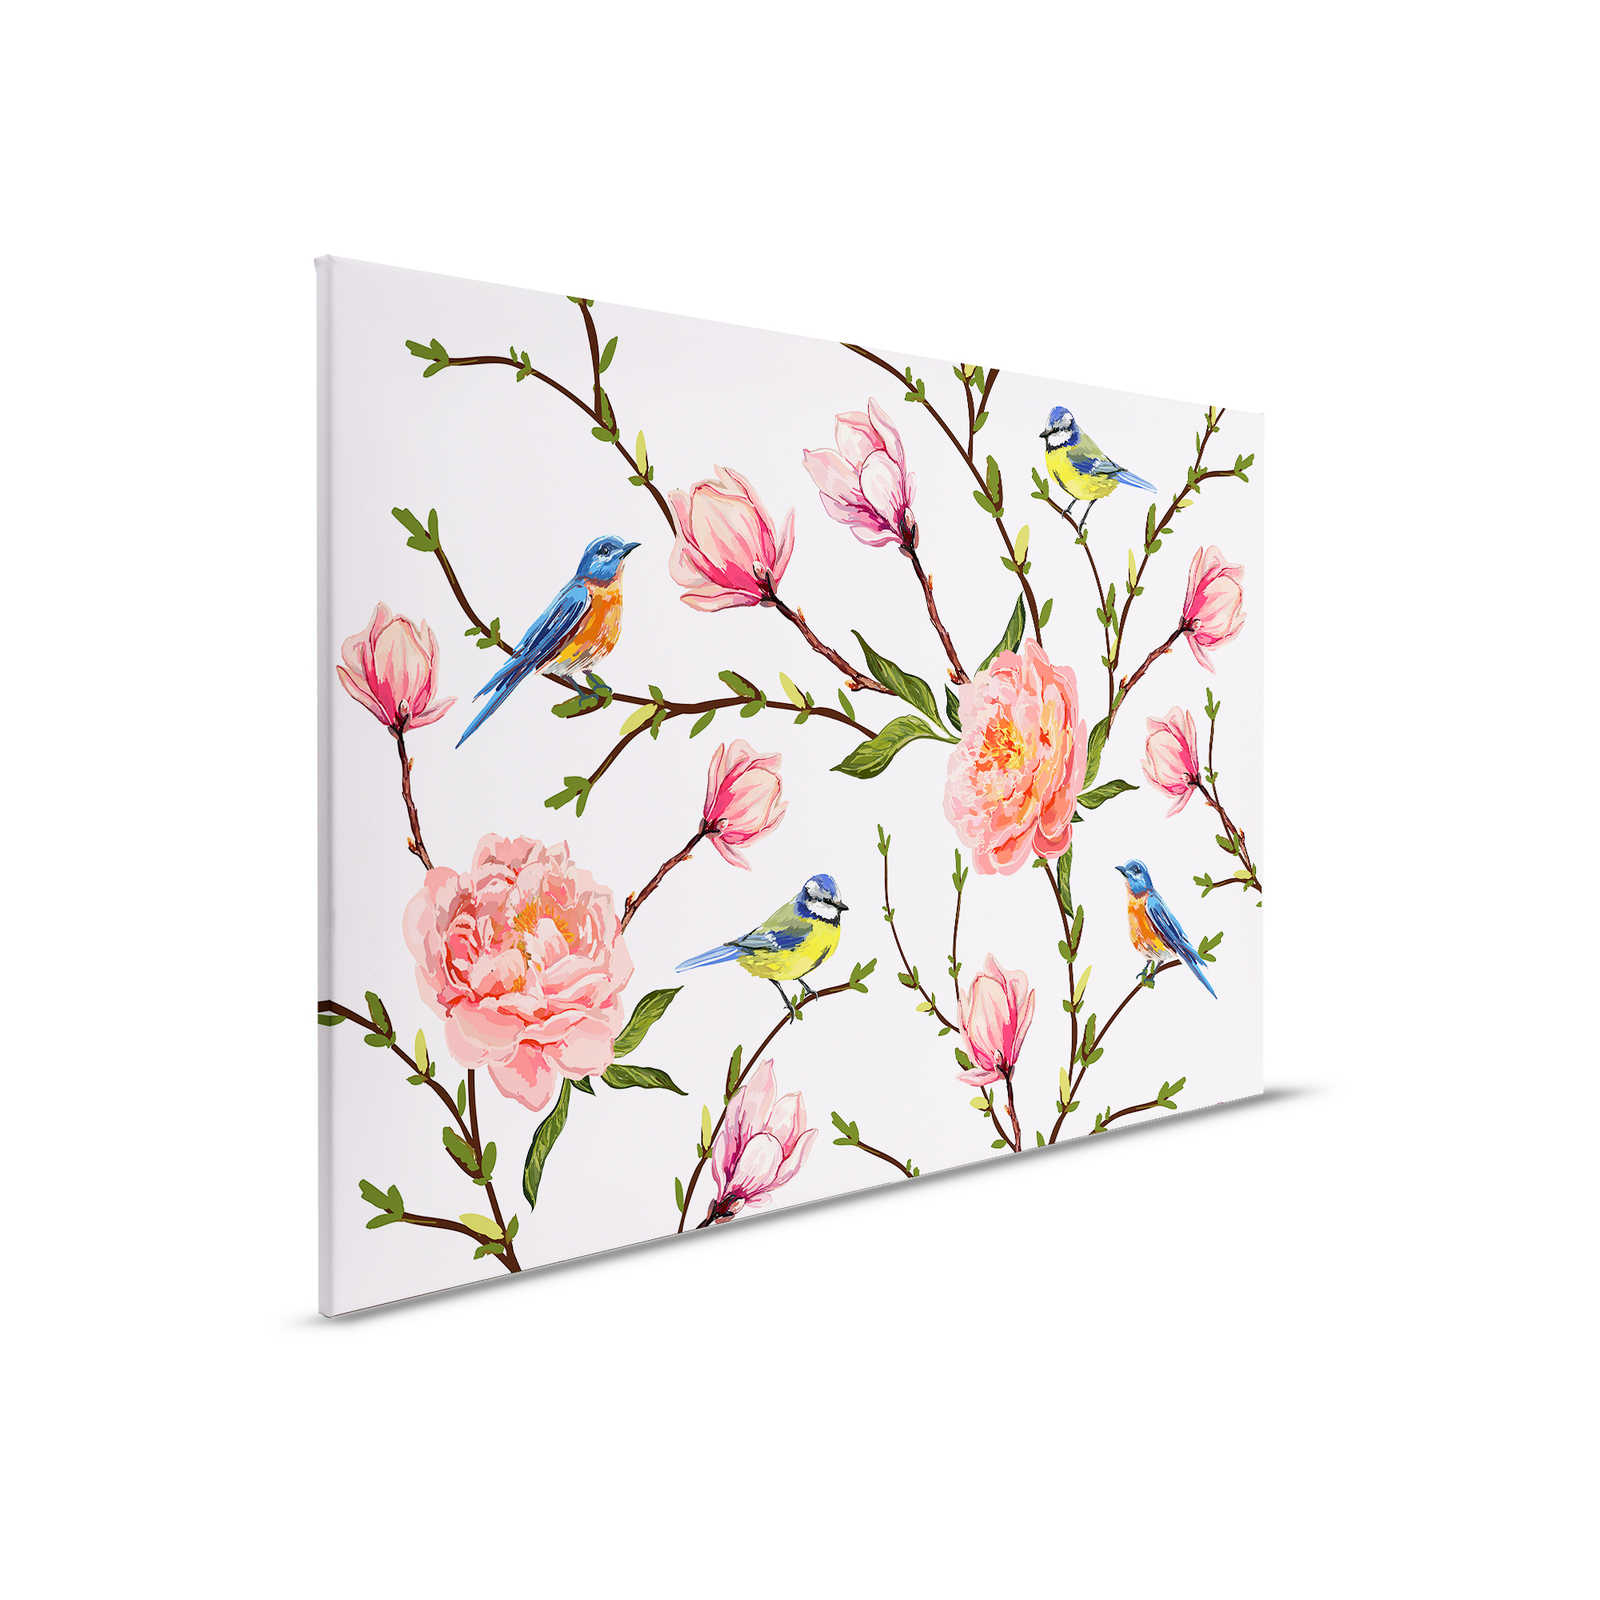         Leinwand Vögel & Blumen minimalistisch – 0,90 m x 0,60 m
    